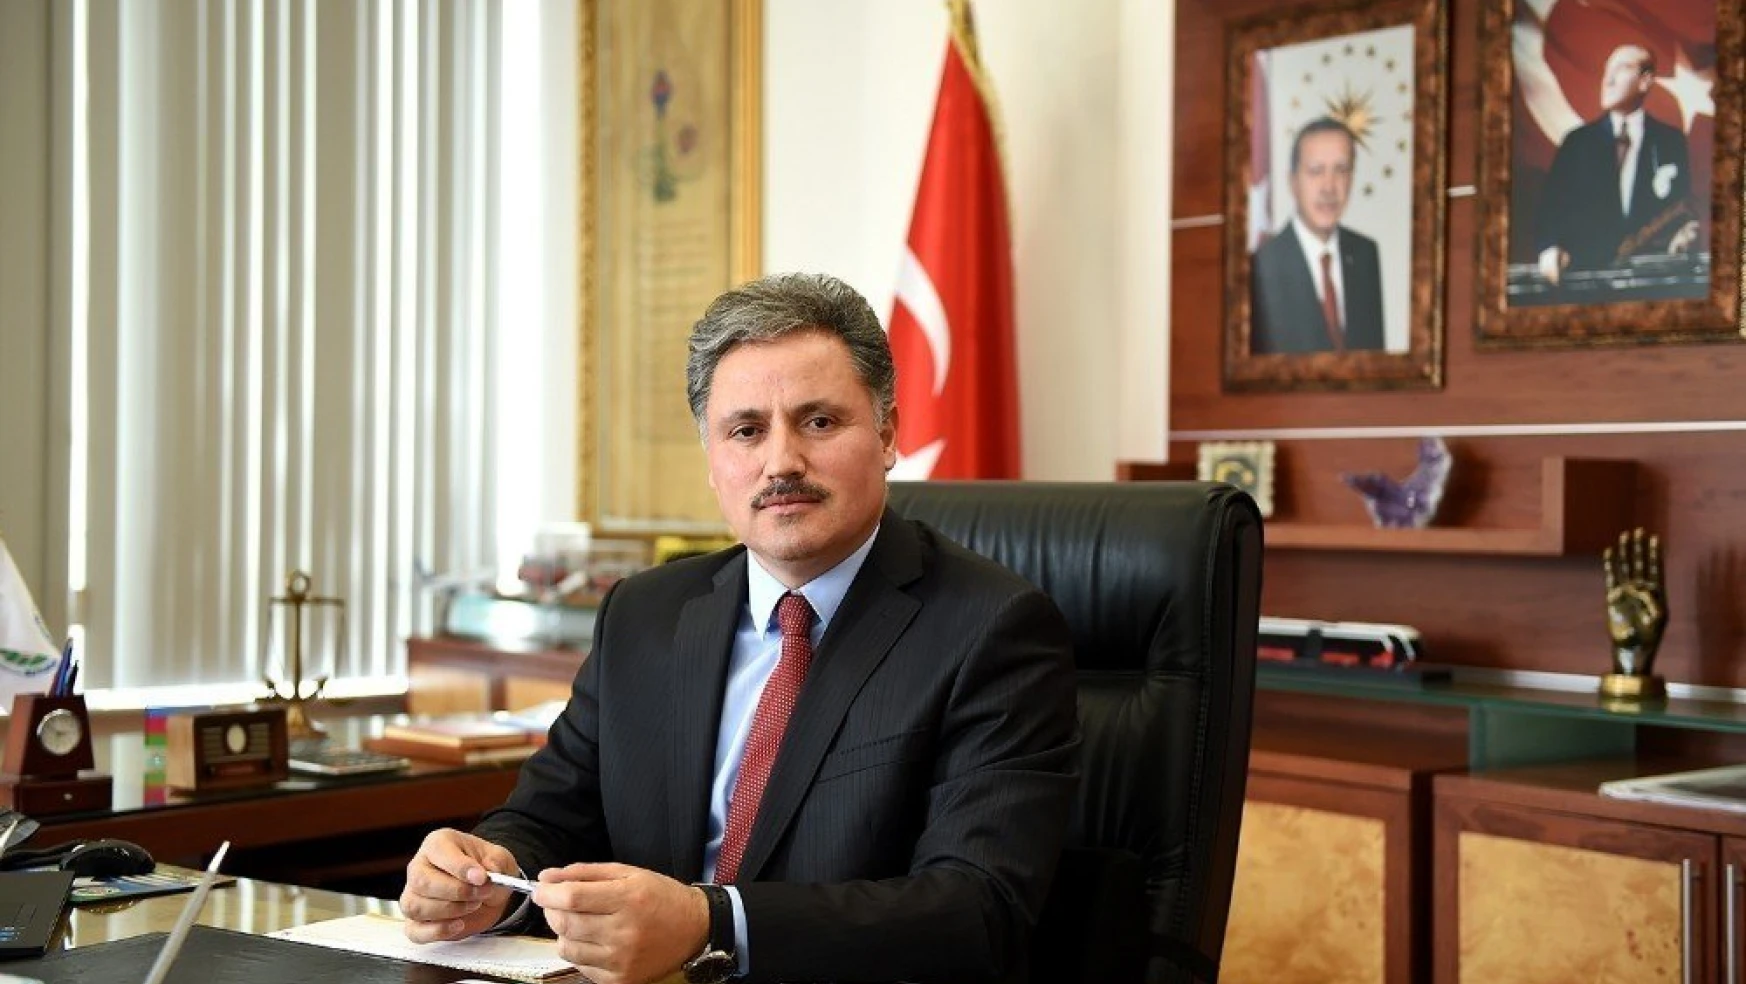 Büyükşehir Belediye Başkanı Çakır Kurban Bayramını kutladı
